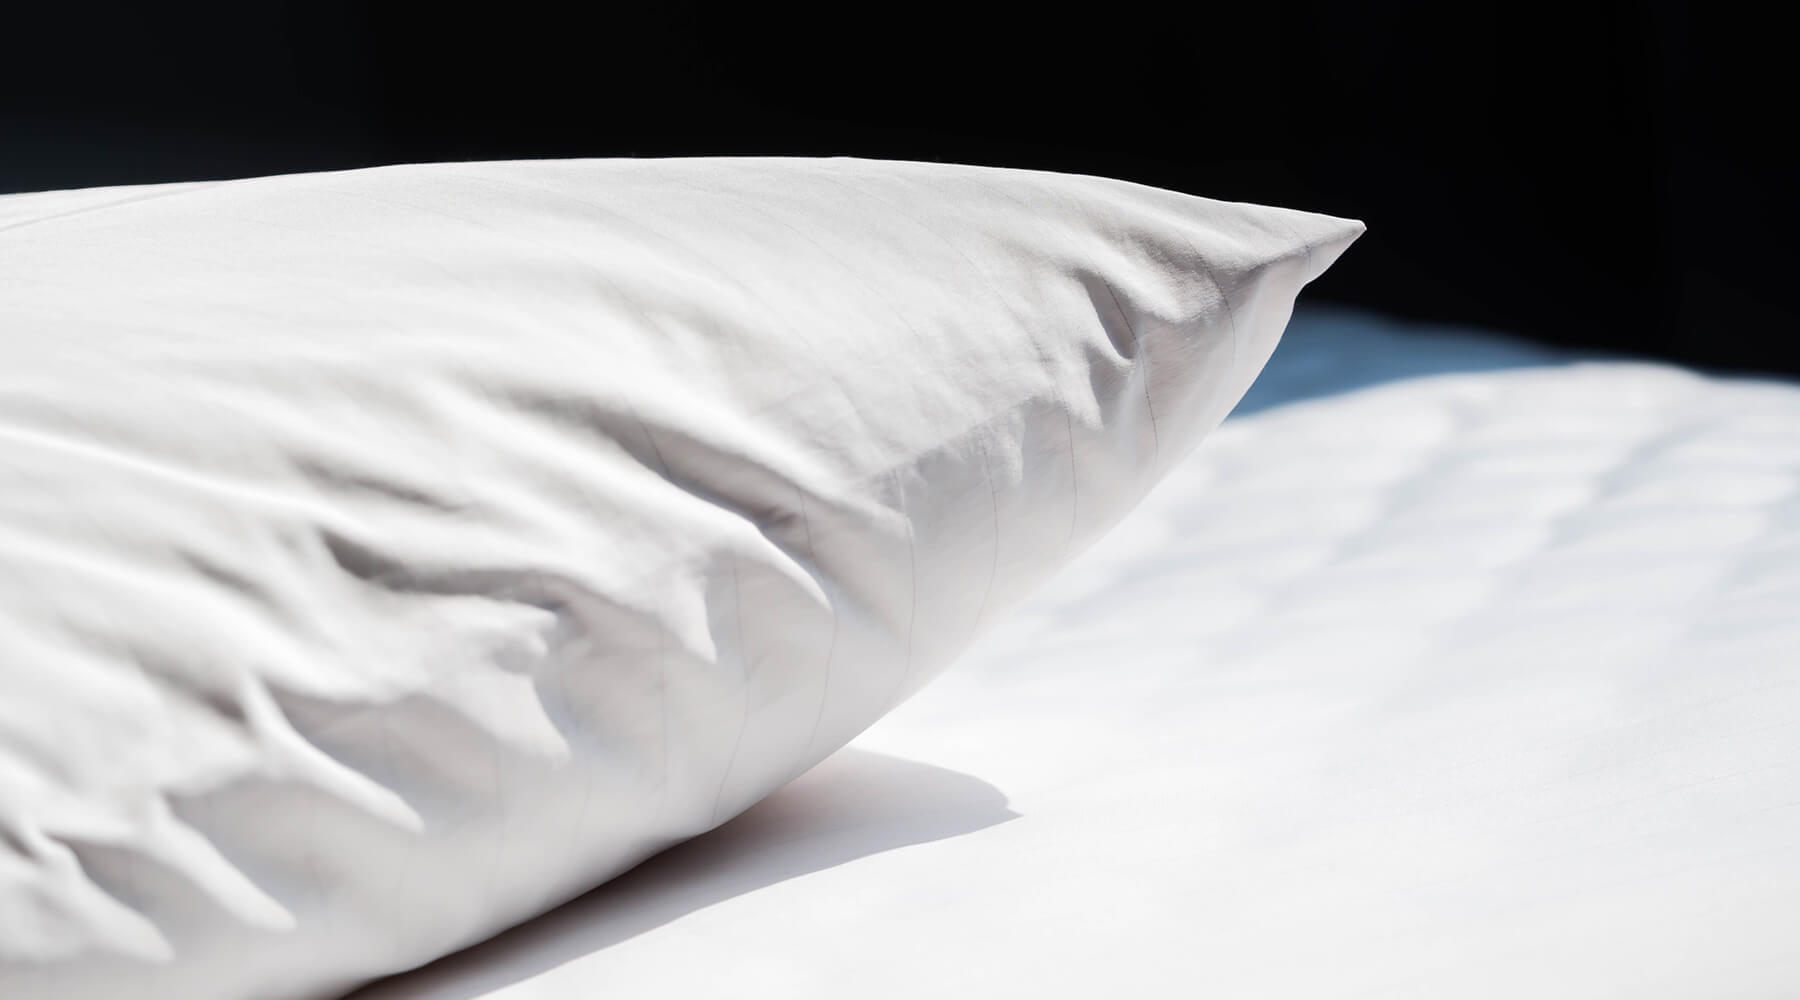 Silk Pillowcase vs Cotton Pillowcase